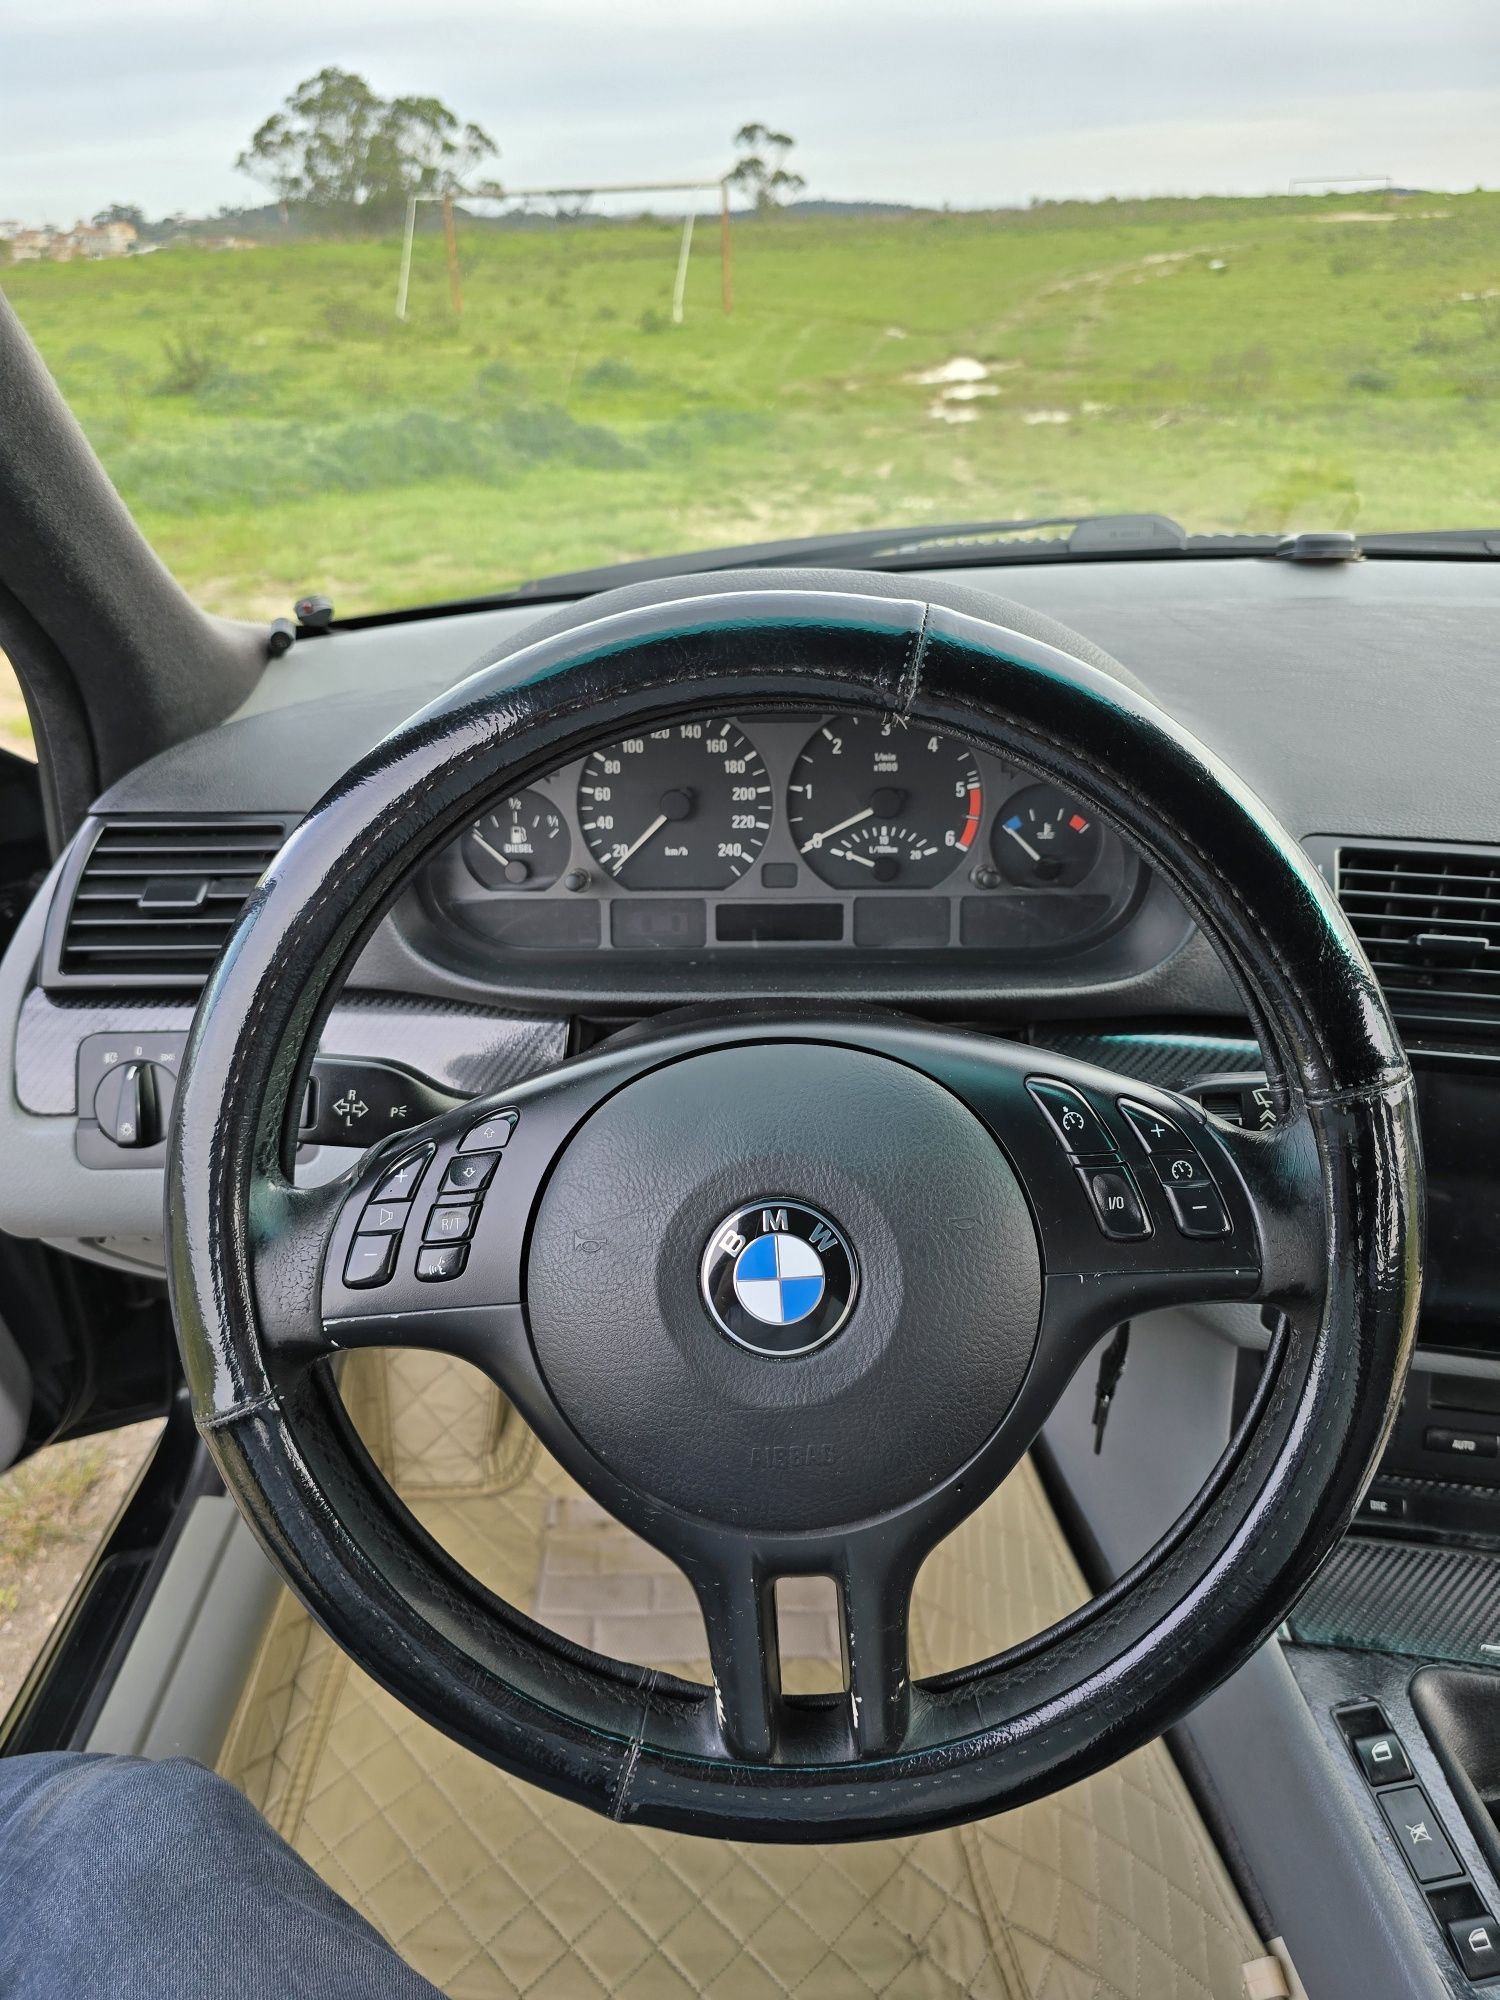 BMW E46 320D Touring